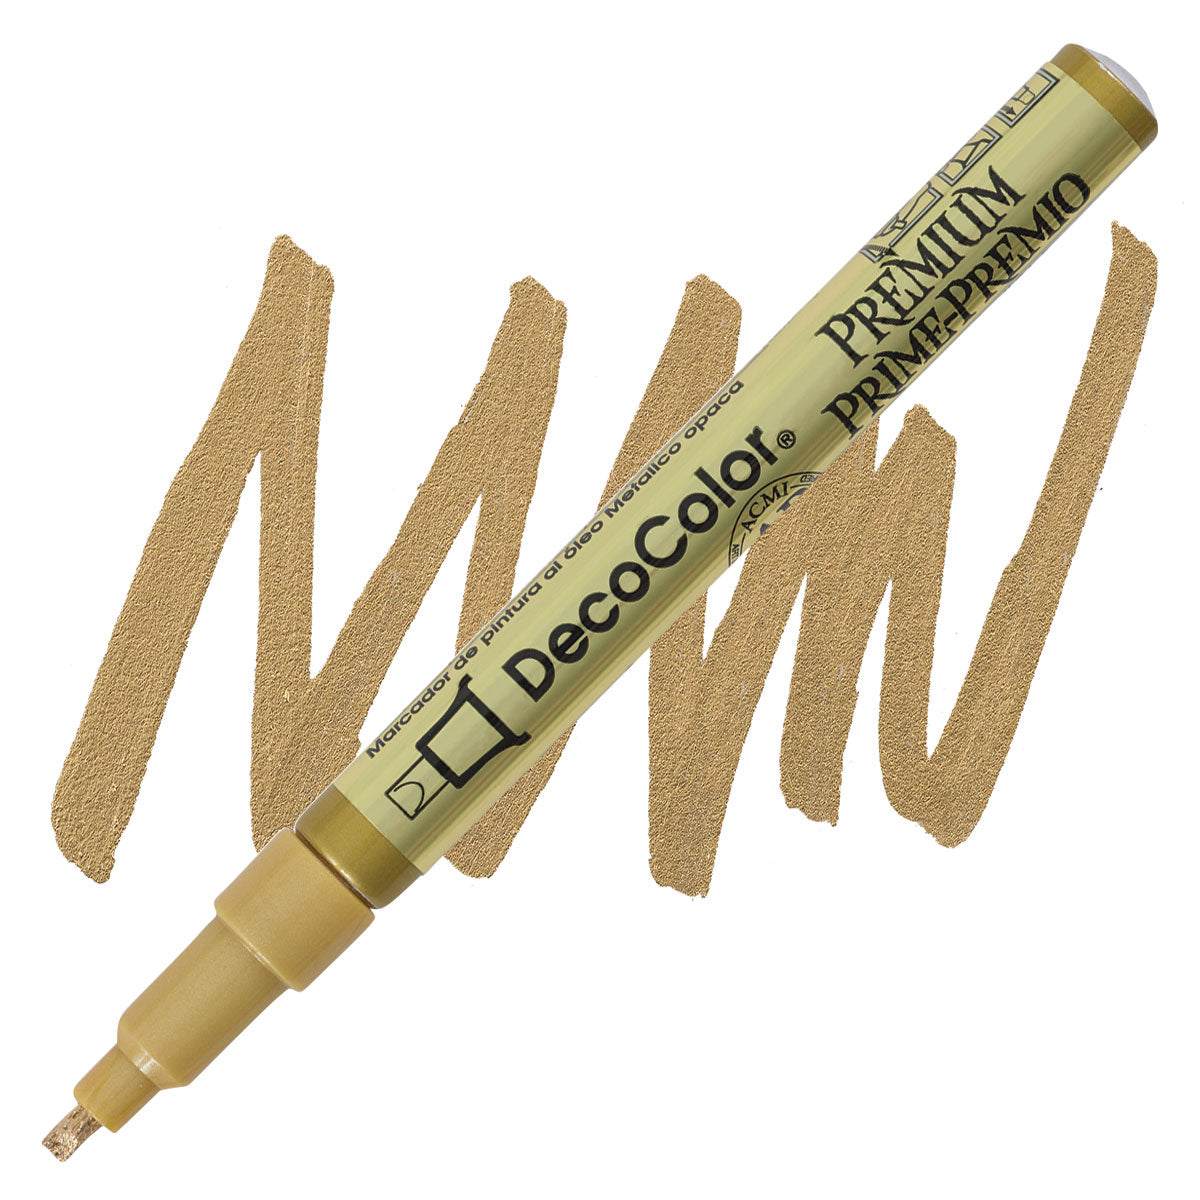 Pennarello a vernice Decocolor Premium, punta piatta/foglia da 2 mm